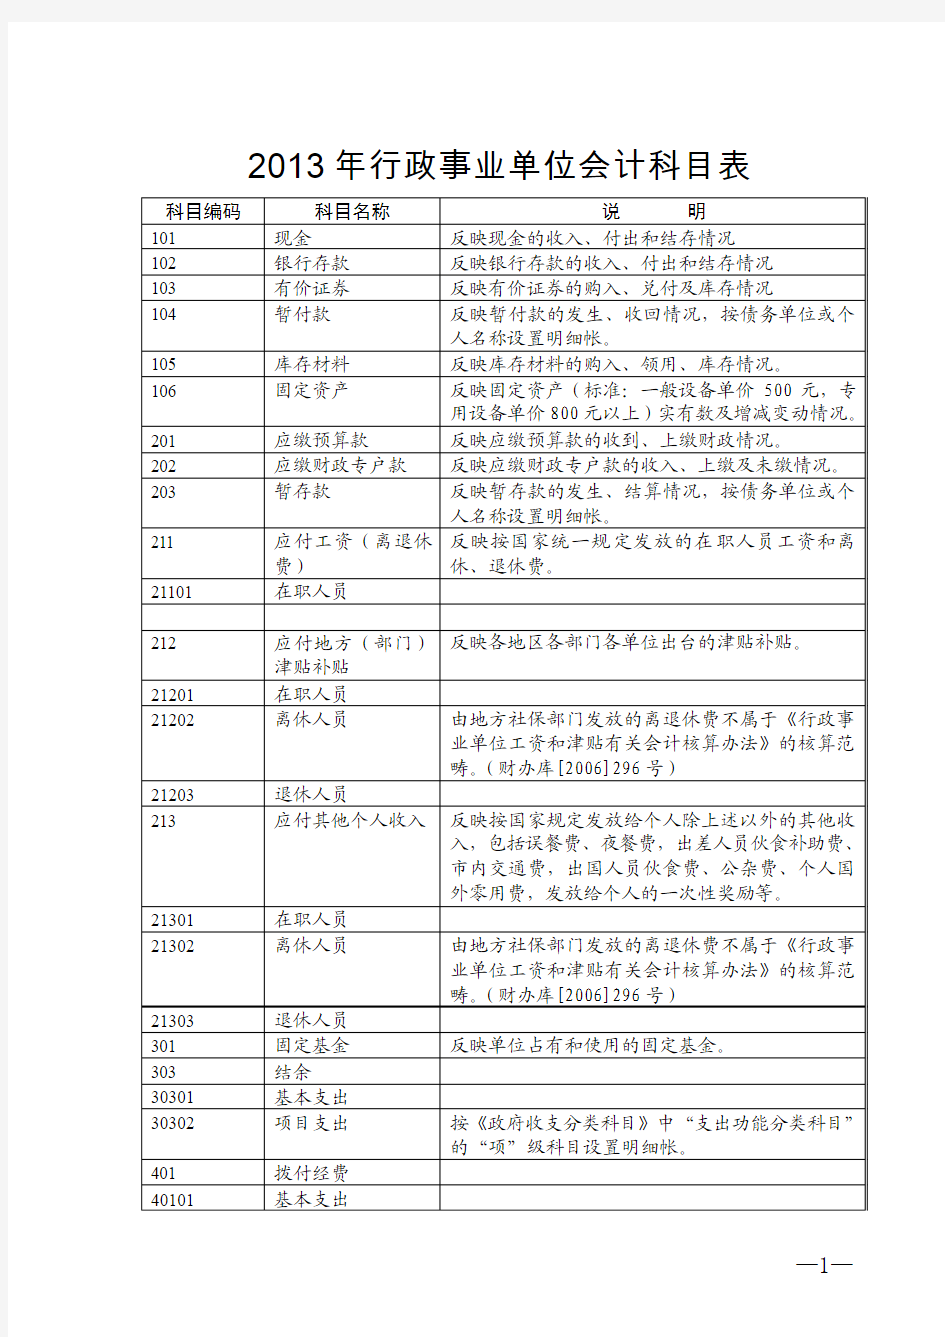 2013年行政事业单位会计科目表